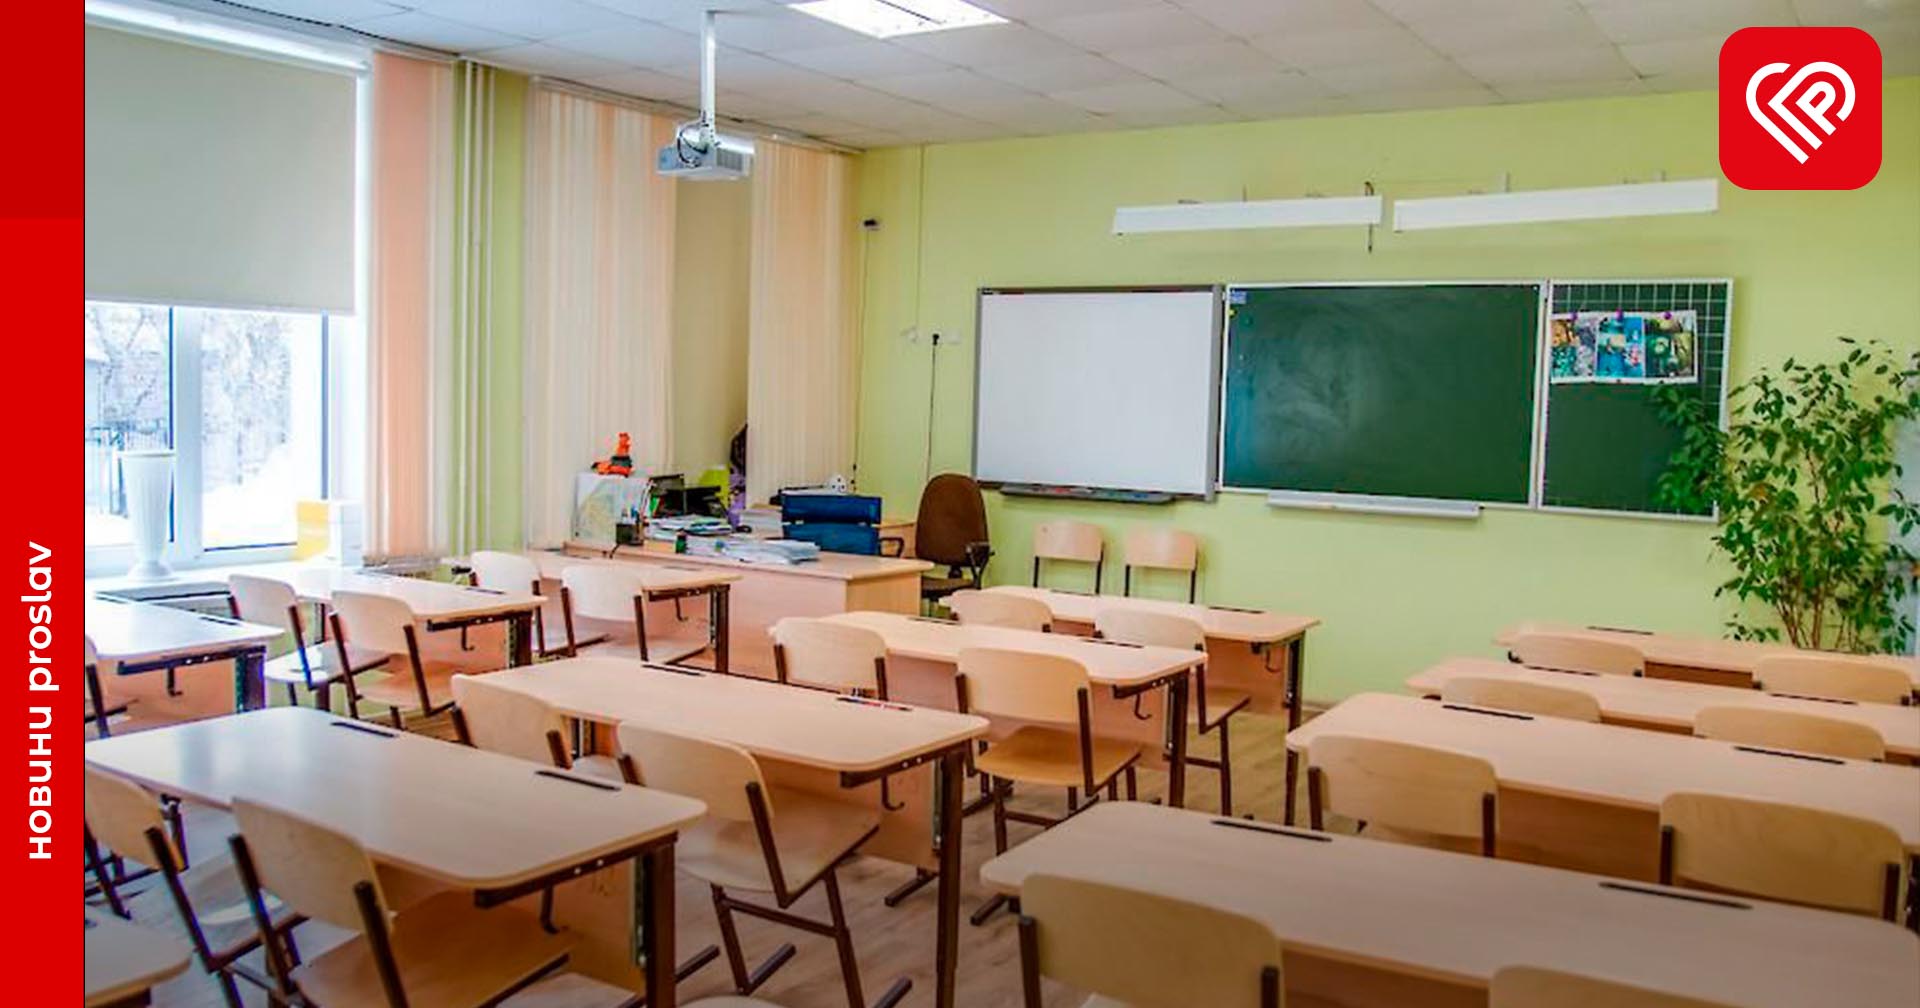 На Київщини заклади освіти з 16 листопада та до кінця тижня працюватимуть у дистанційному режимі – КОВА